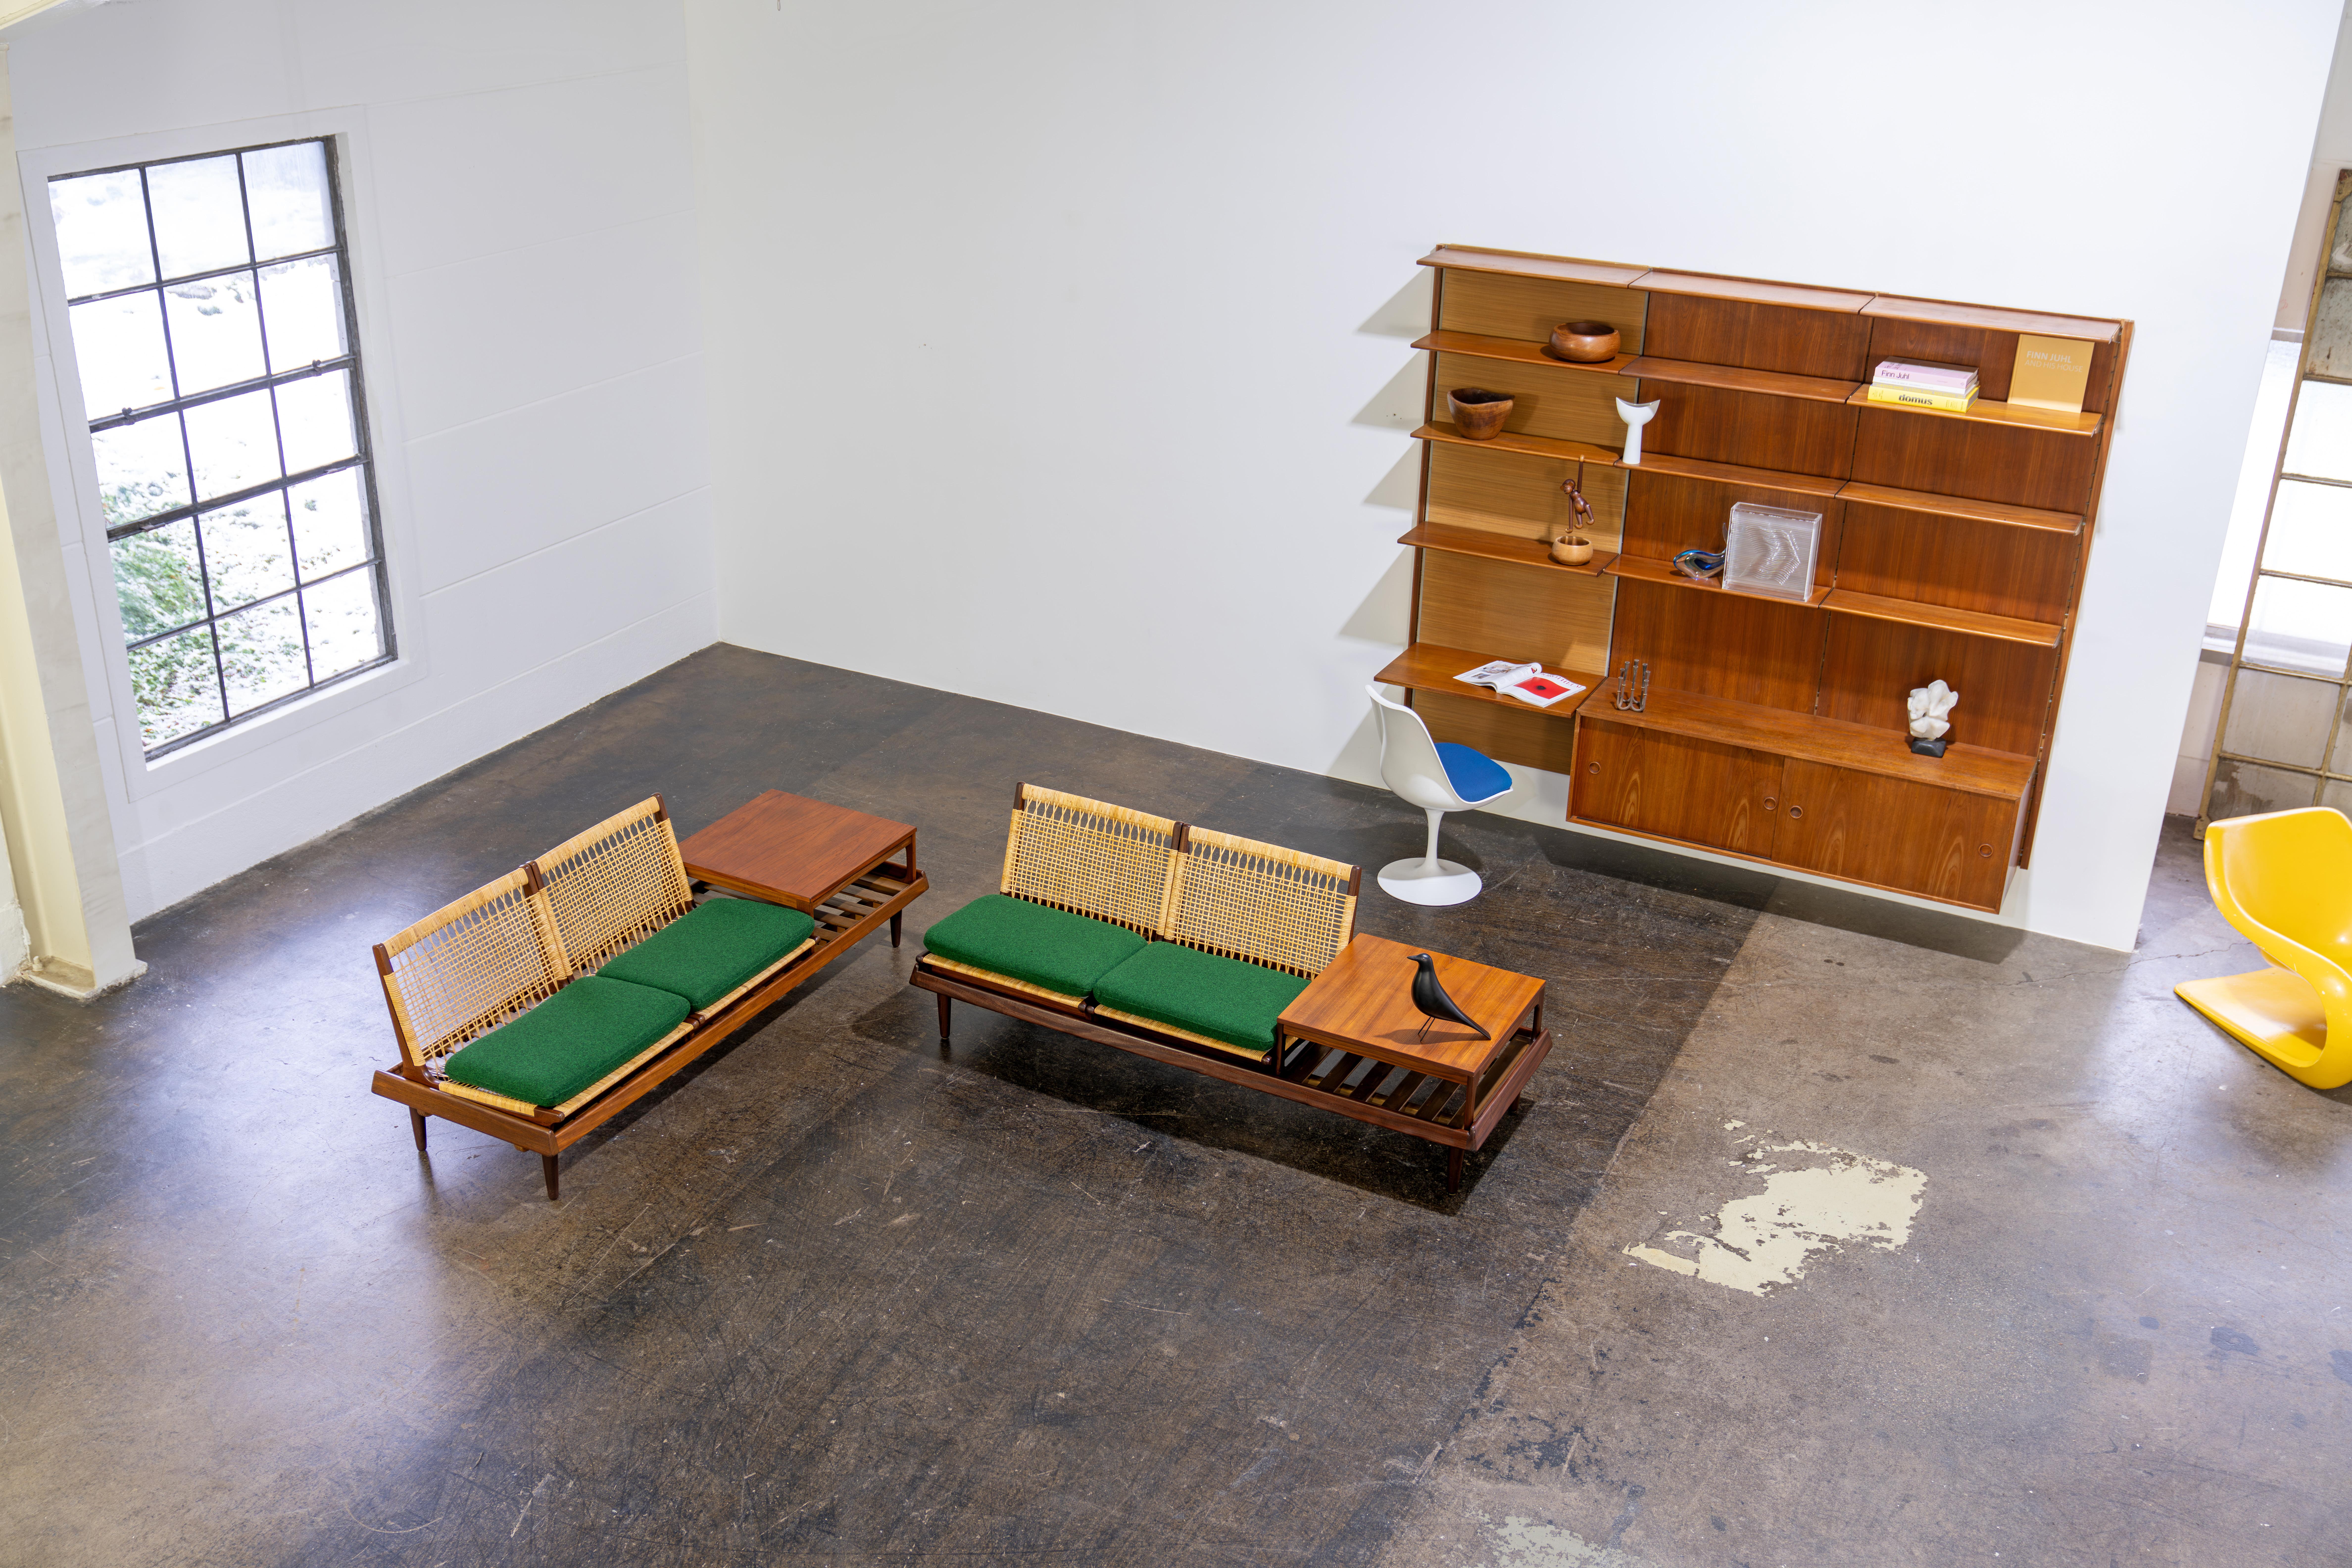 Paar modulare TV-Bänke aus Teakholz Modell 161 von Hans Olsen für Bramin, Dänemark, aus den 1960er Jahren. Das Set besteht aus zwei Bänken, vier Sitzmodulen und zwei Tischen. Neben dem schönen Rattan-Geflecht sind die Sitze mit zwei Kissen pro Sitz